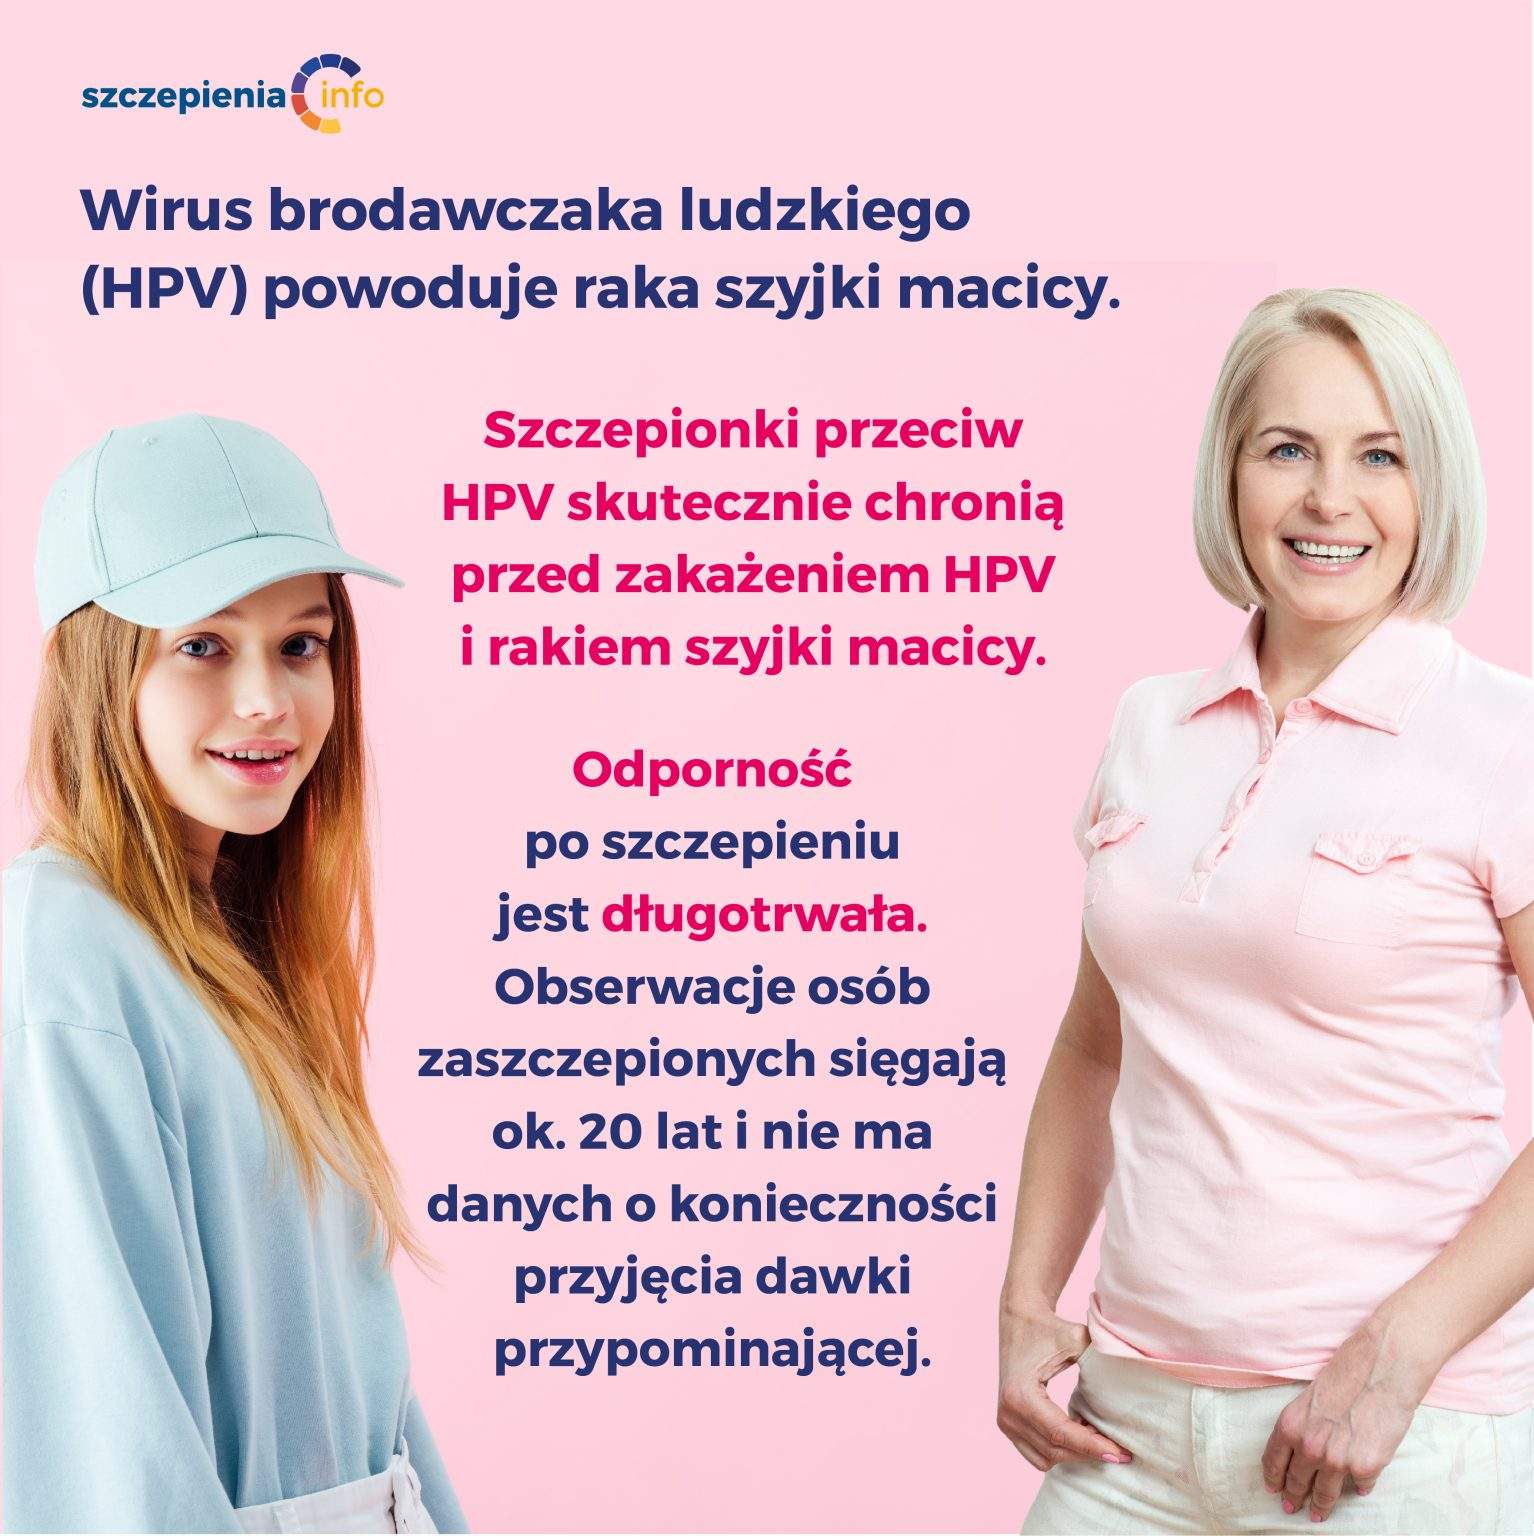 HPV powoduje raka szyjki macicy.